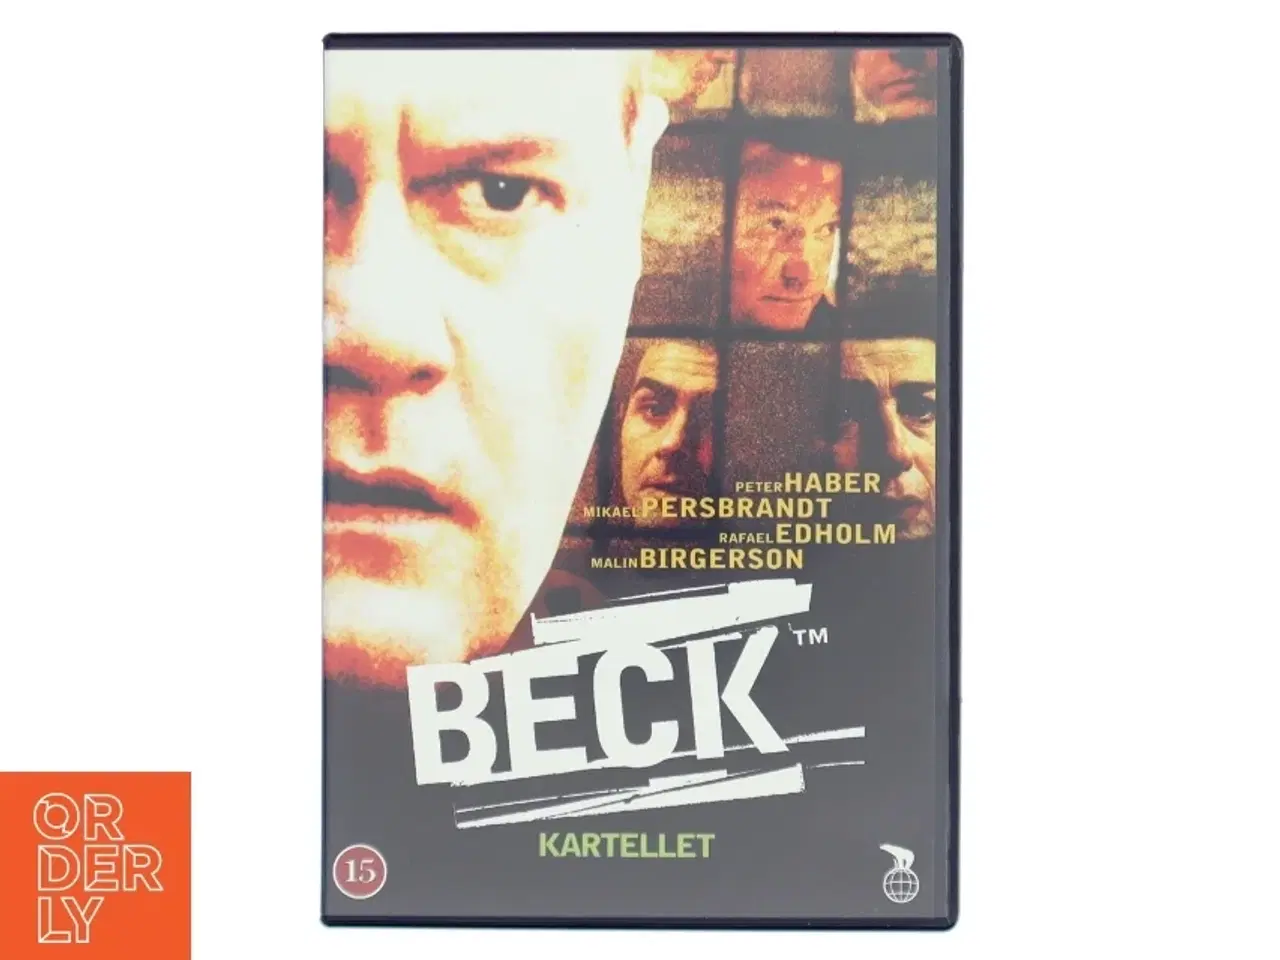 Billede 1 - Beck - Kartellet DVD fra Nordisk Film